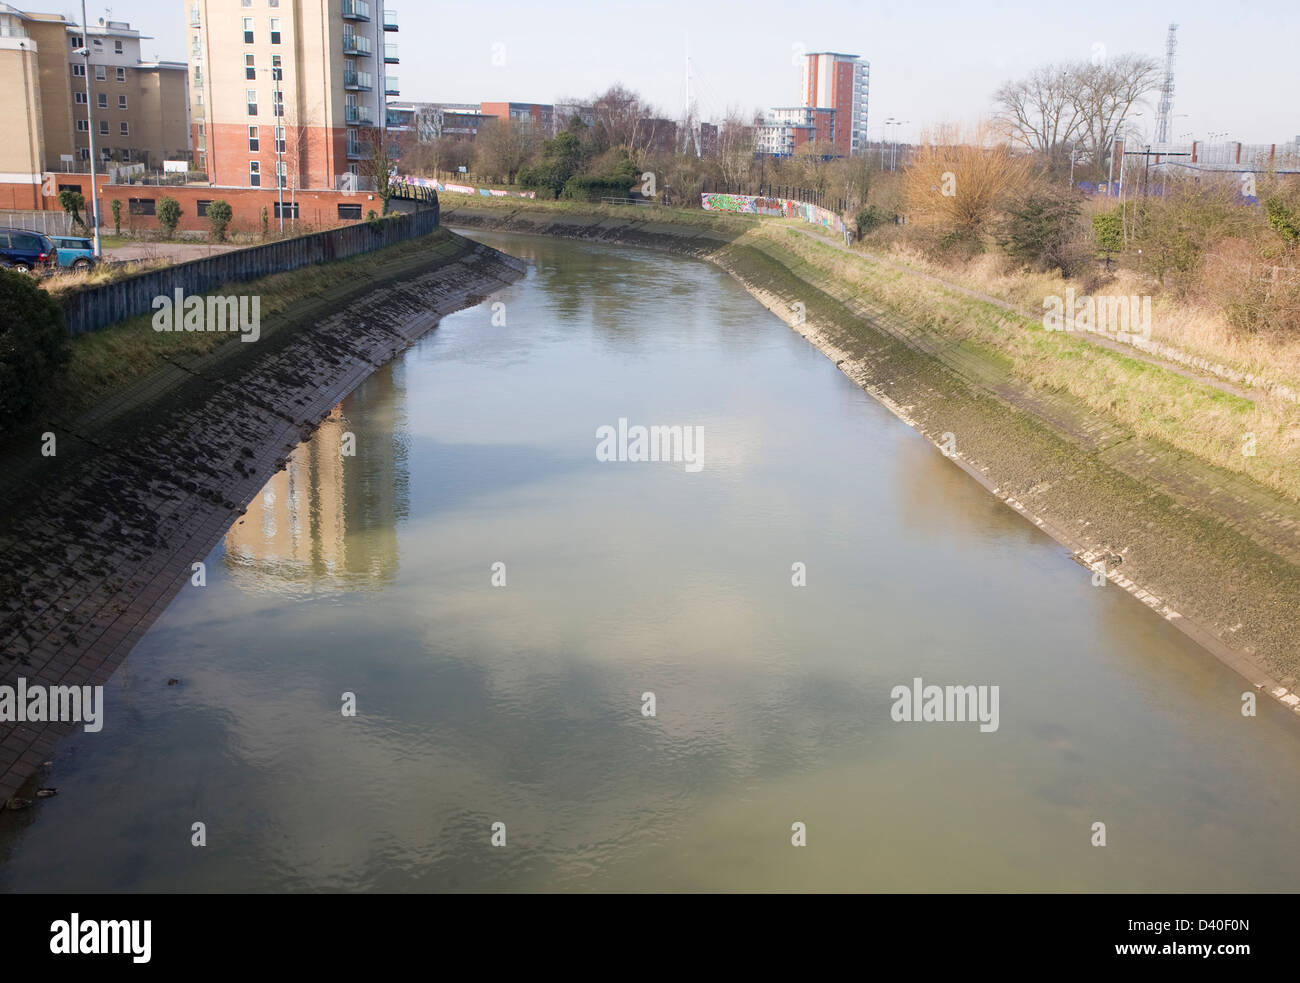 Konkrete Stützmauer, die Stärkung der Flussufer zu erhöhen Kanal Effizienz, Fluss Gipping, Ipswich, Suffolk, England Stockfoto